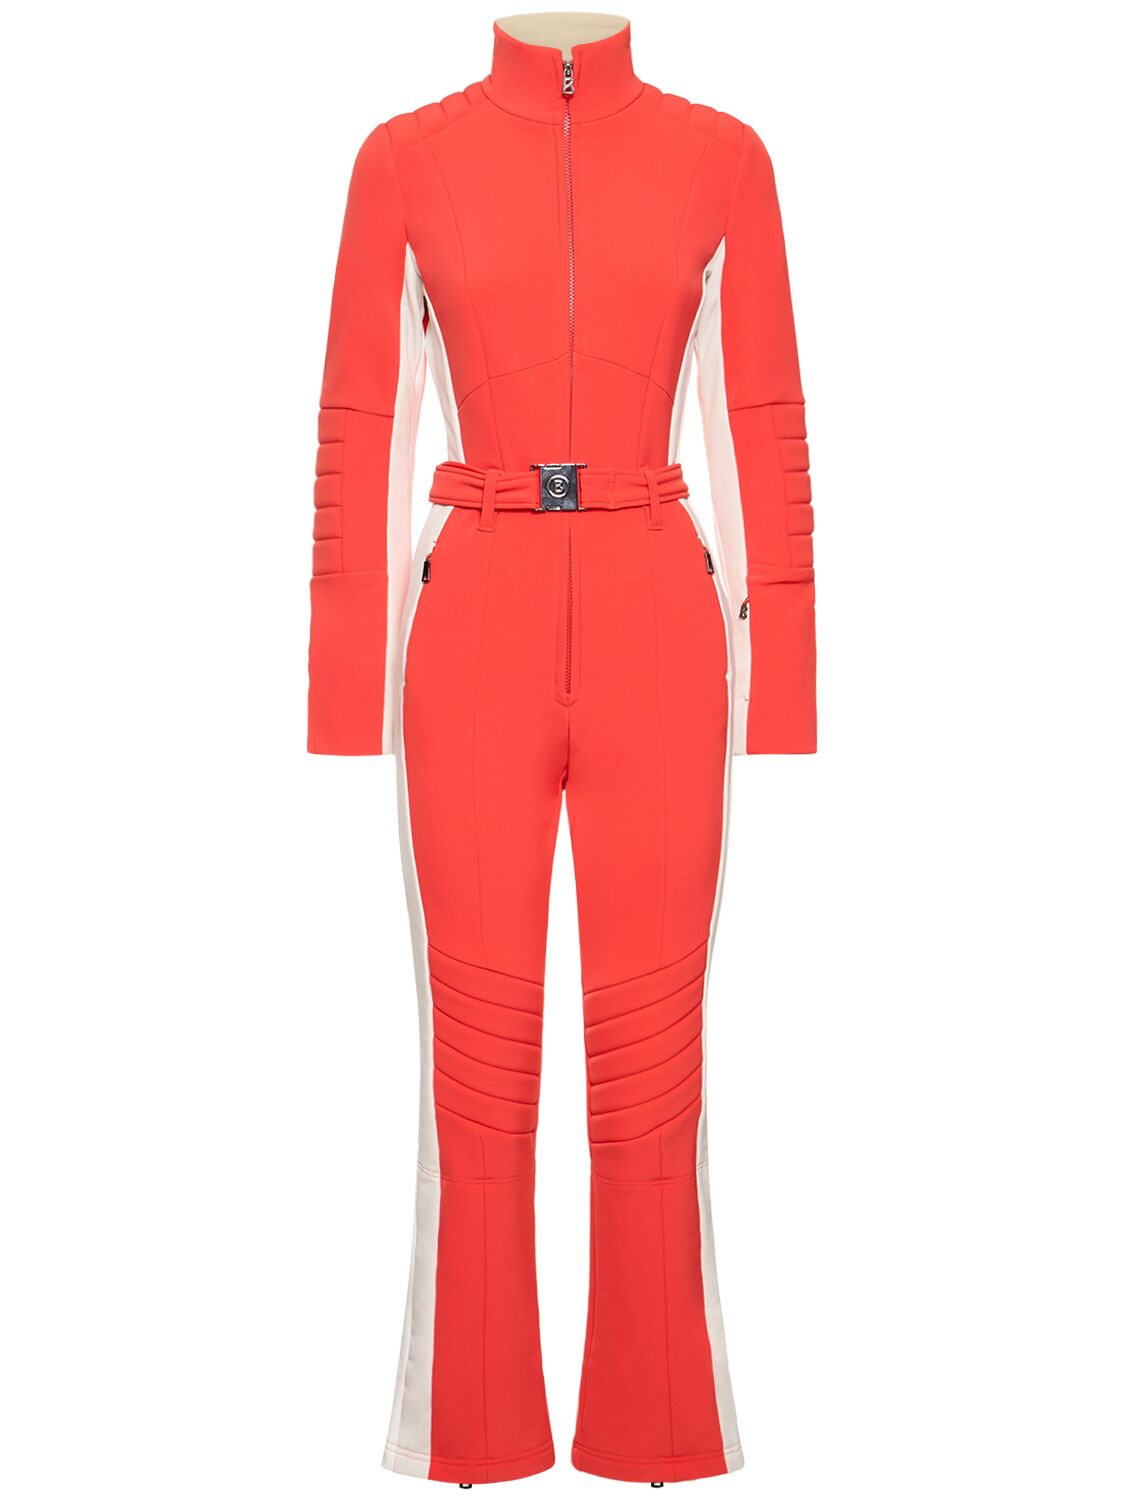 Bogner Talisha High Neck Long Sleeve Ski Suit In Orange,red